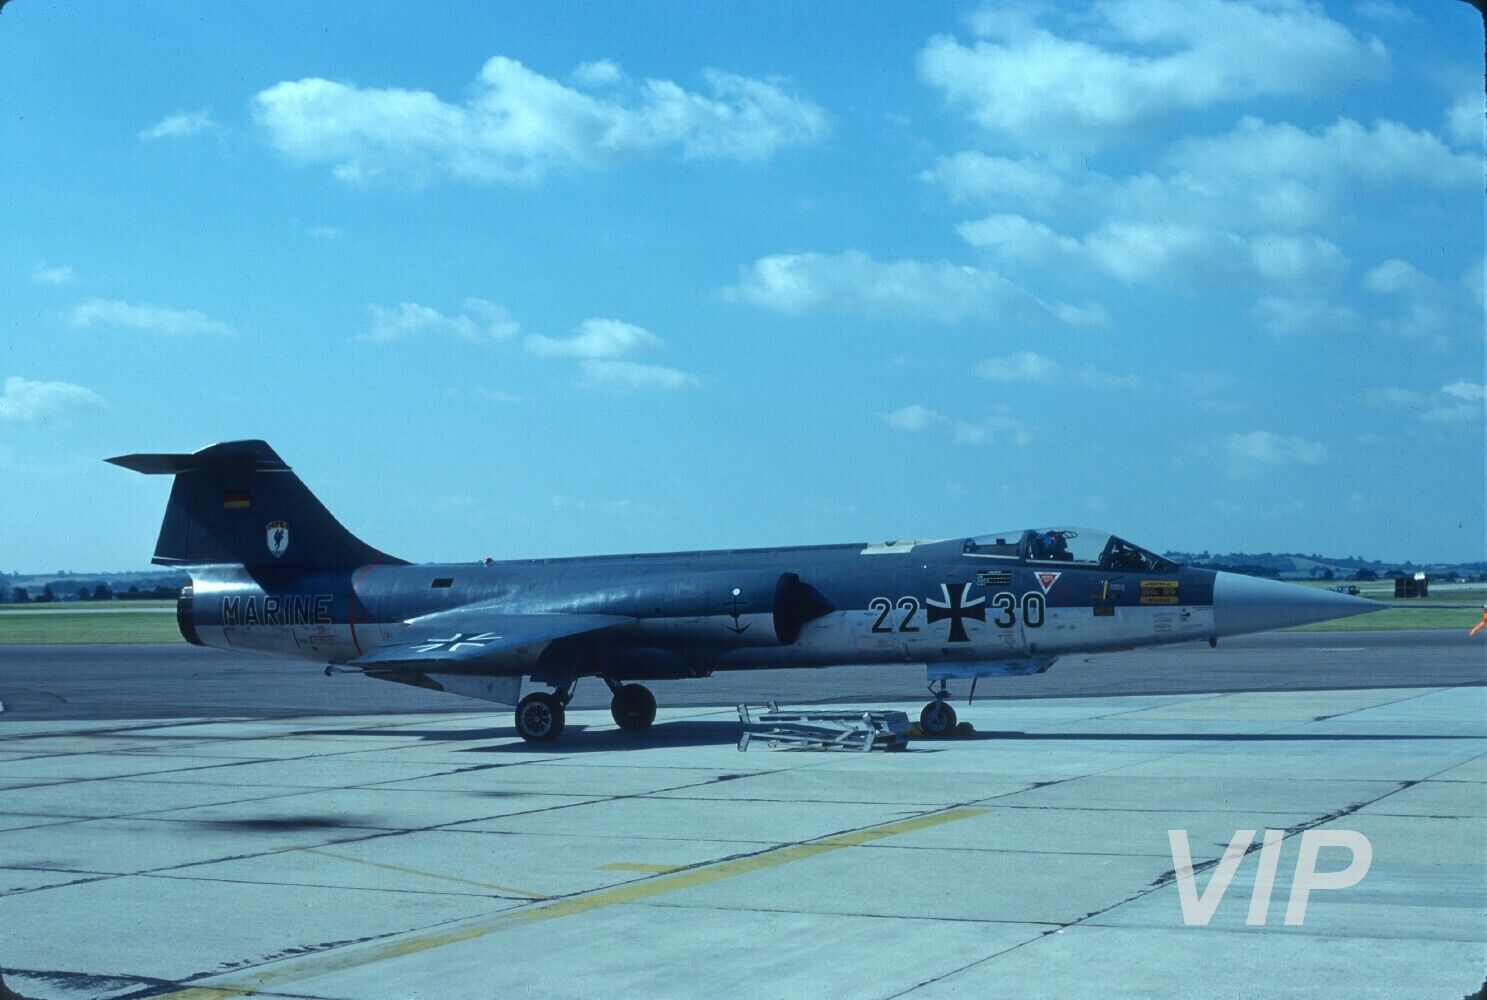 Original slide 22+30 Lockheed F-104G West German Air Force, 1979